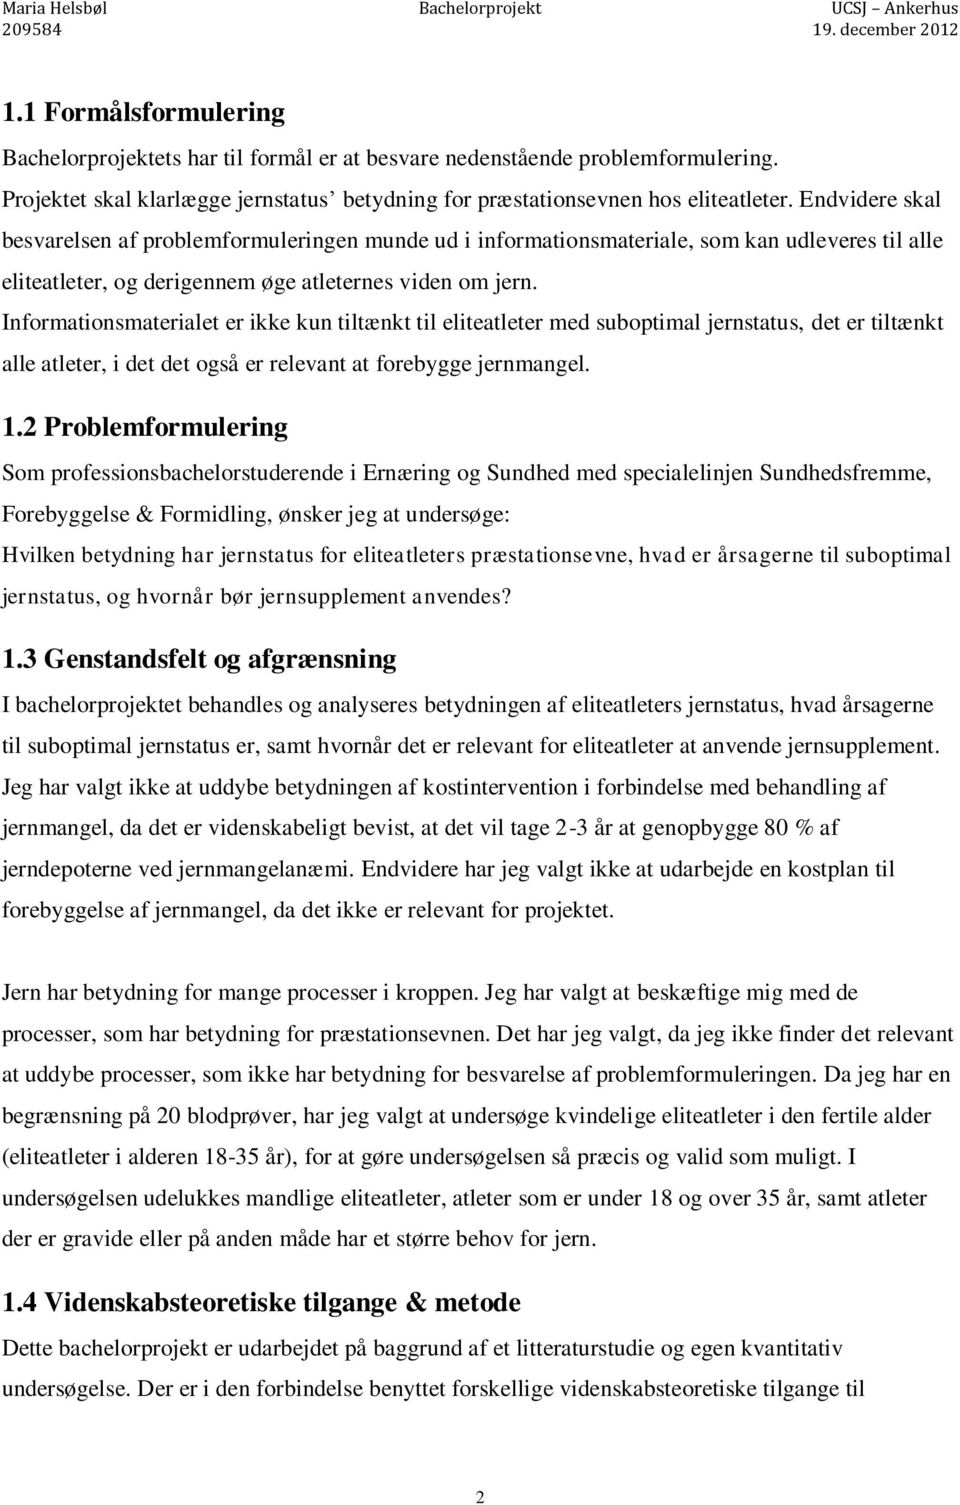 Jern og præstationsevne - PDF Gratis download